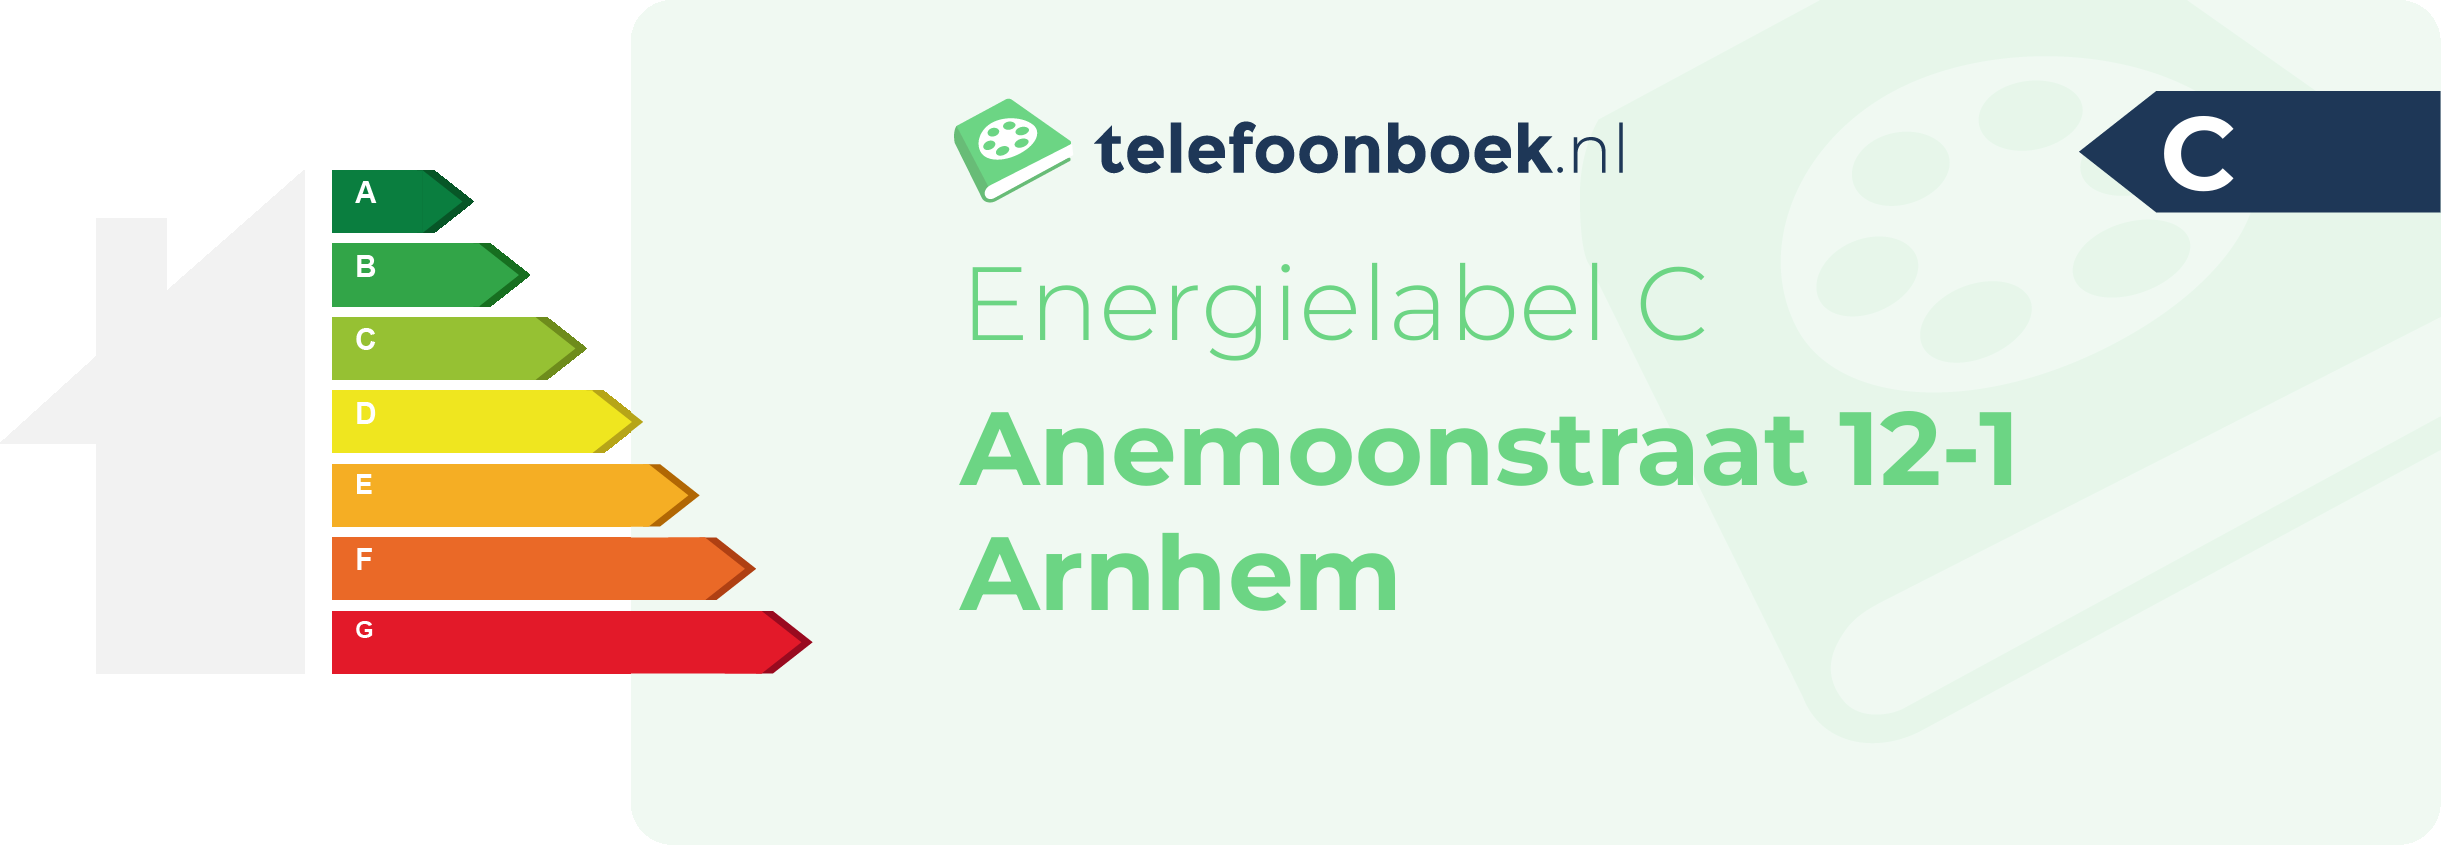 Energielabel Anemoonstraat 12-1 Arnhem